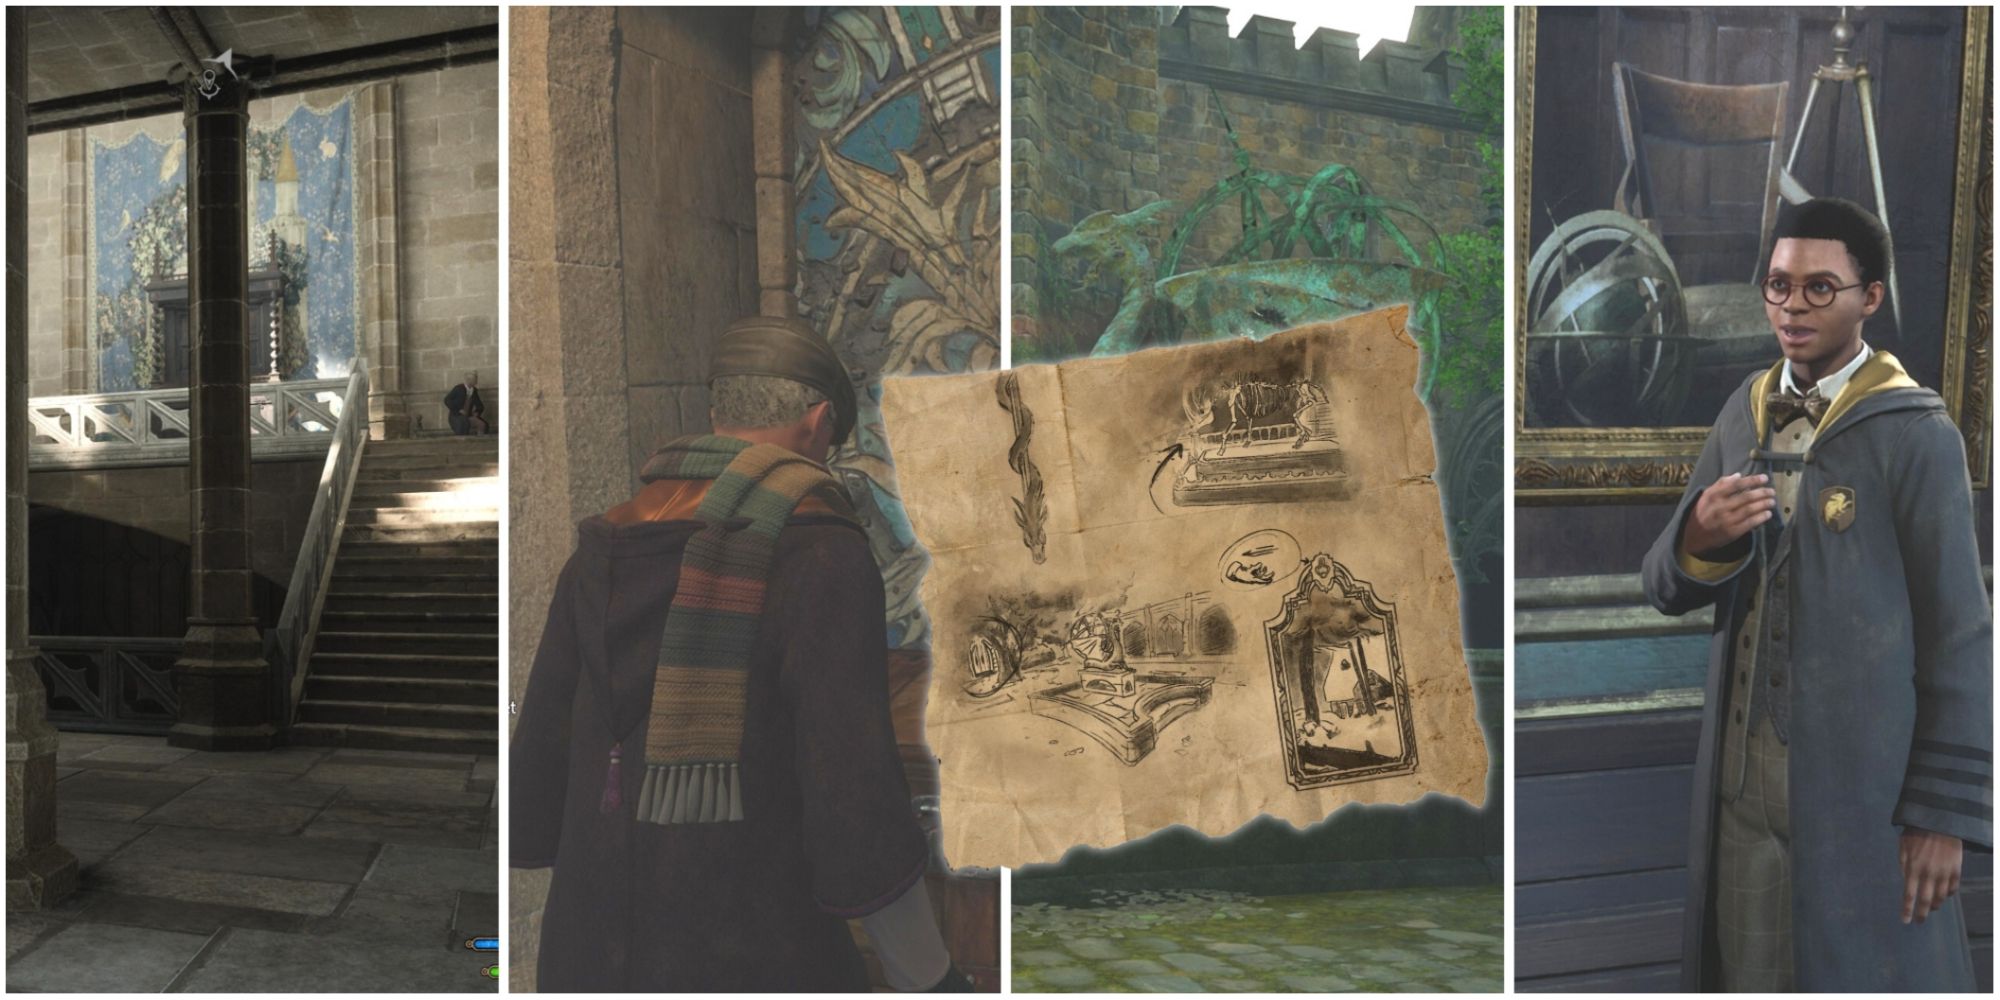 Hogwarts Legacy Screenshots: How to Take & Where to Get - EaseUS